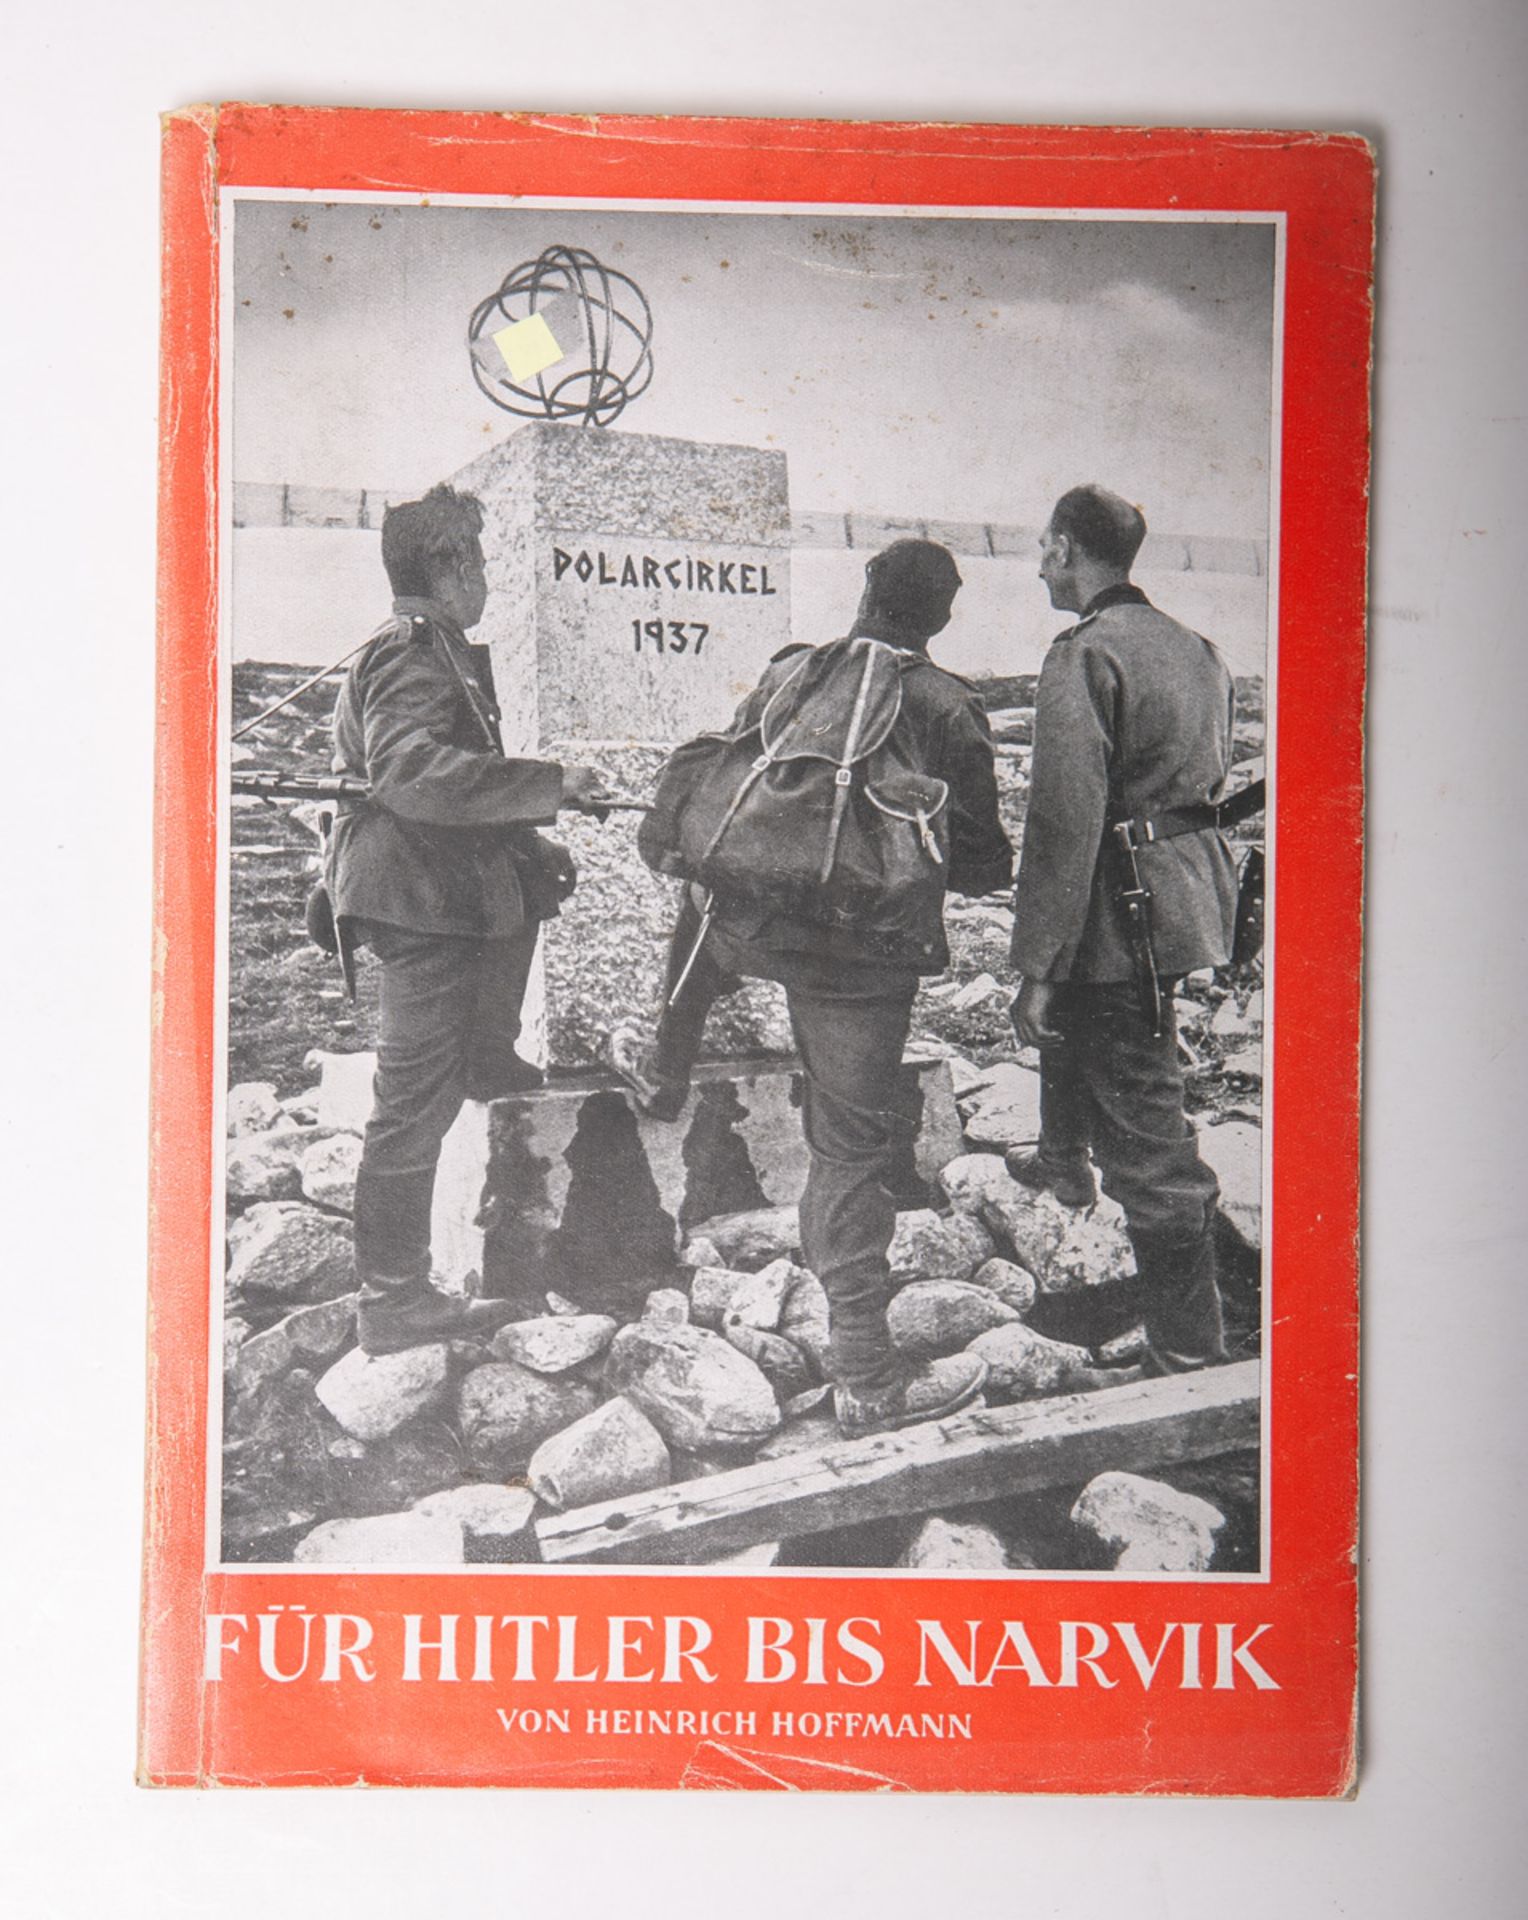 Hoffmann, Heinrich, Prof. (Hrsg.), "Für Hitler bis Narvik" - Image 2 of 2